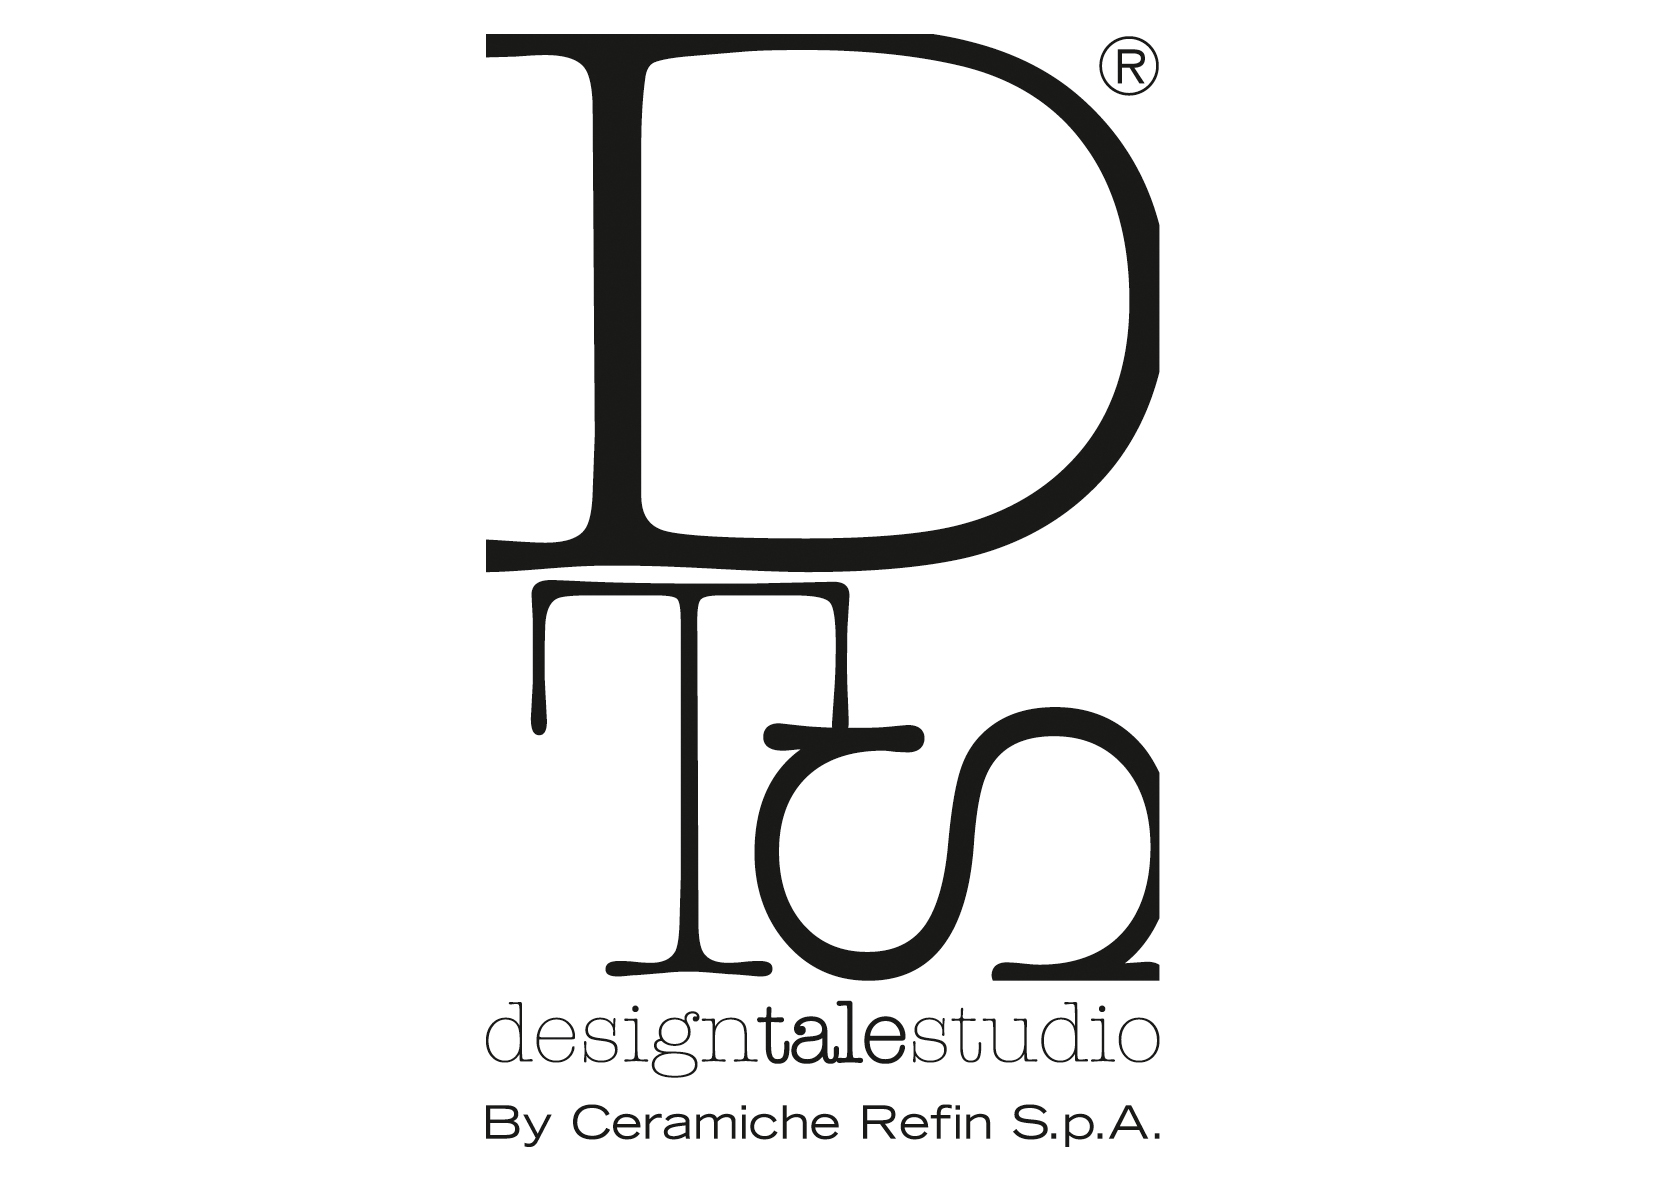 DesignTaleStudio